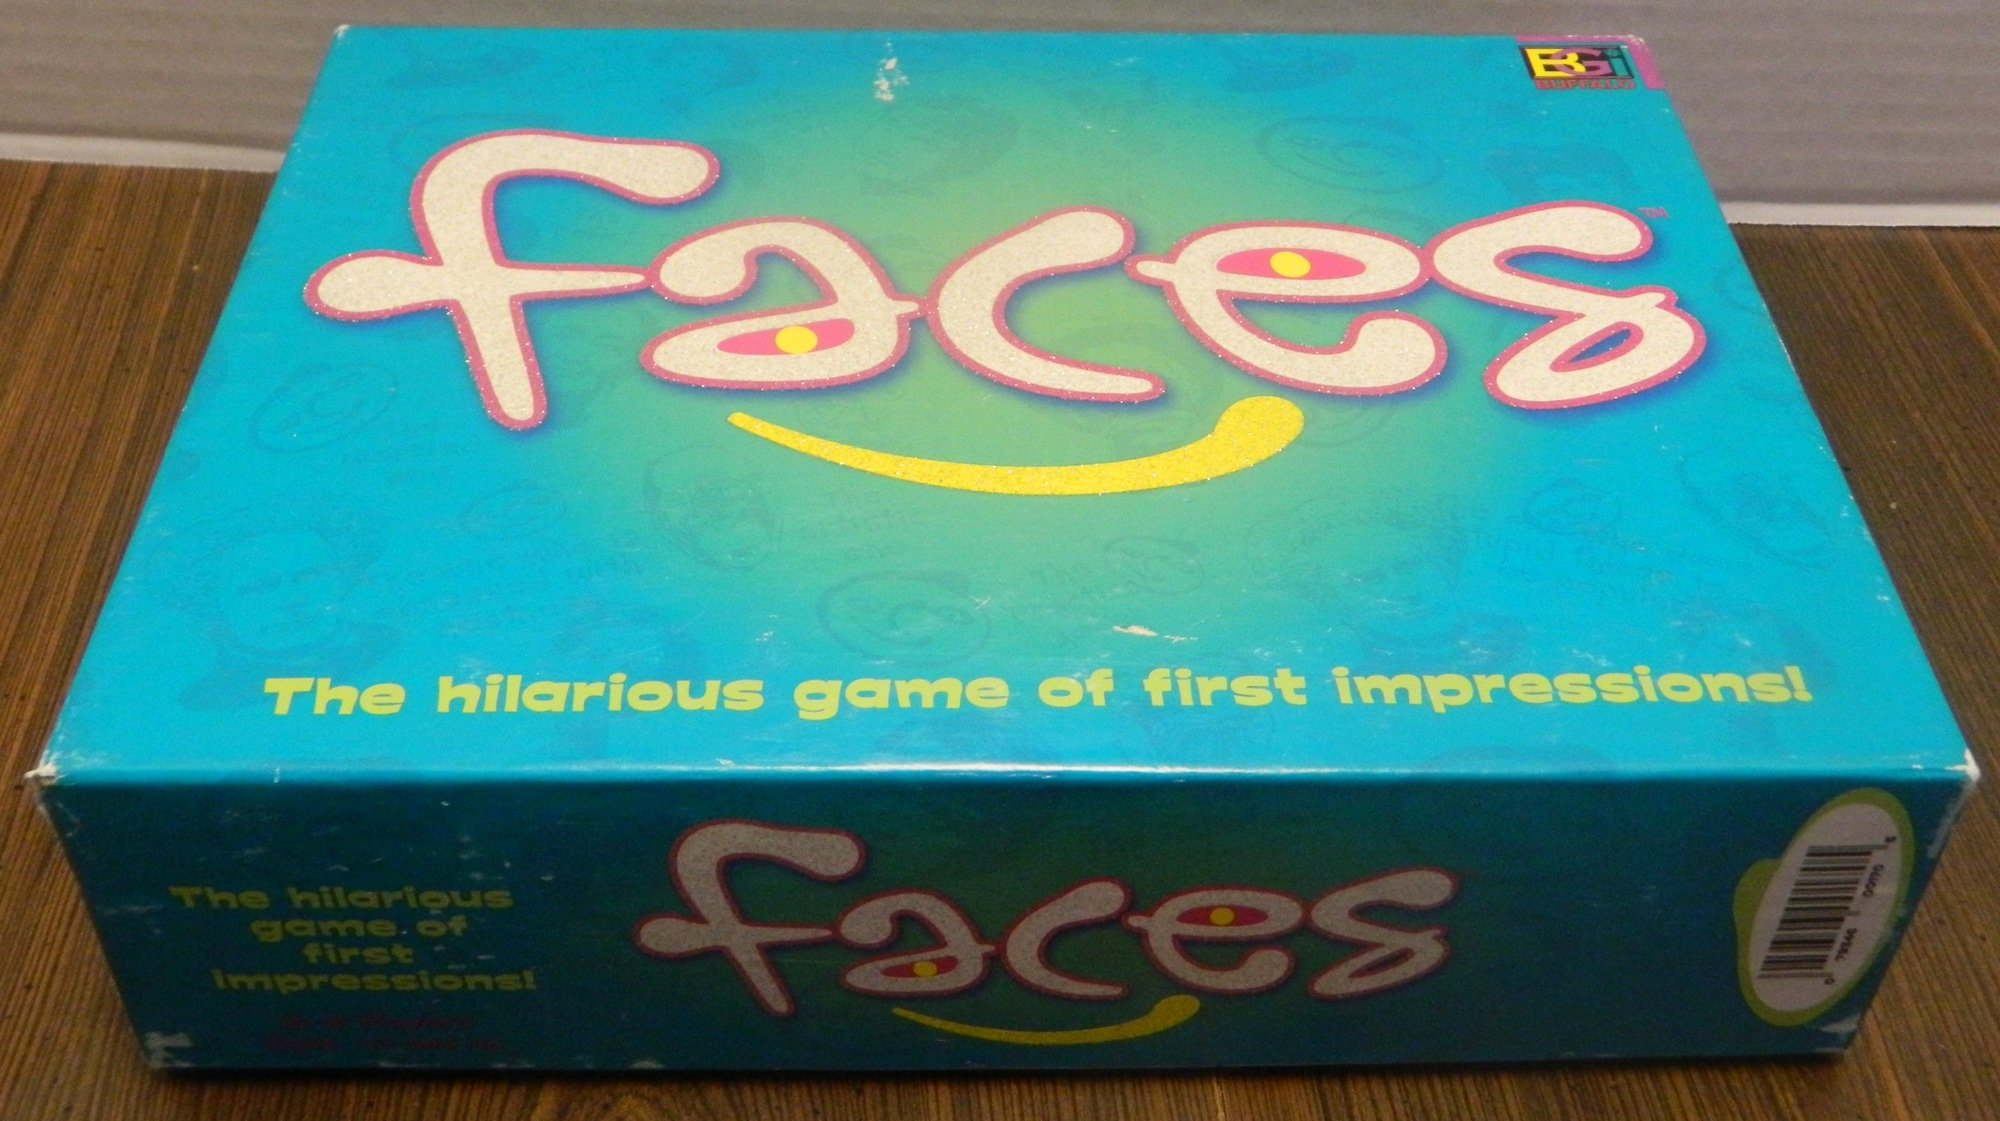 Faces Box